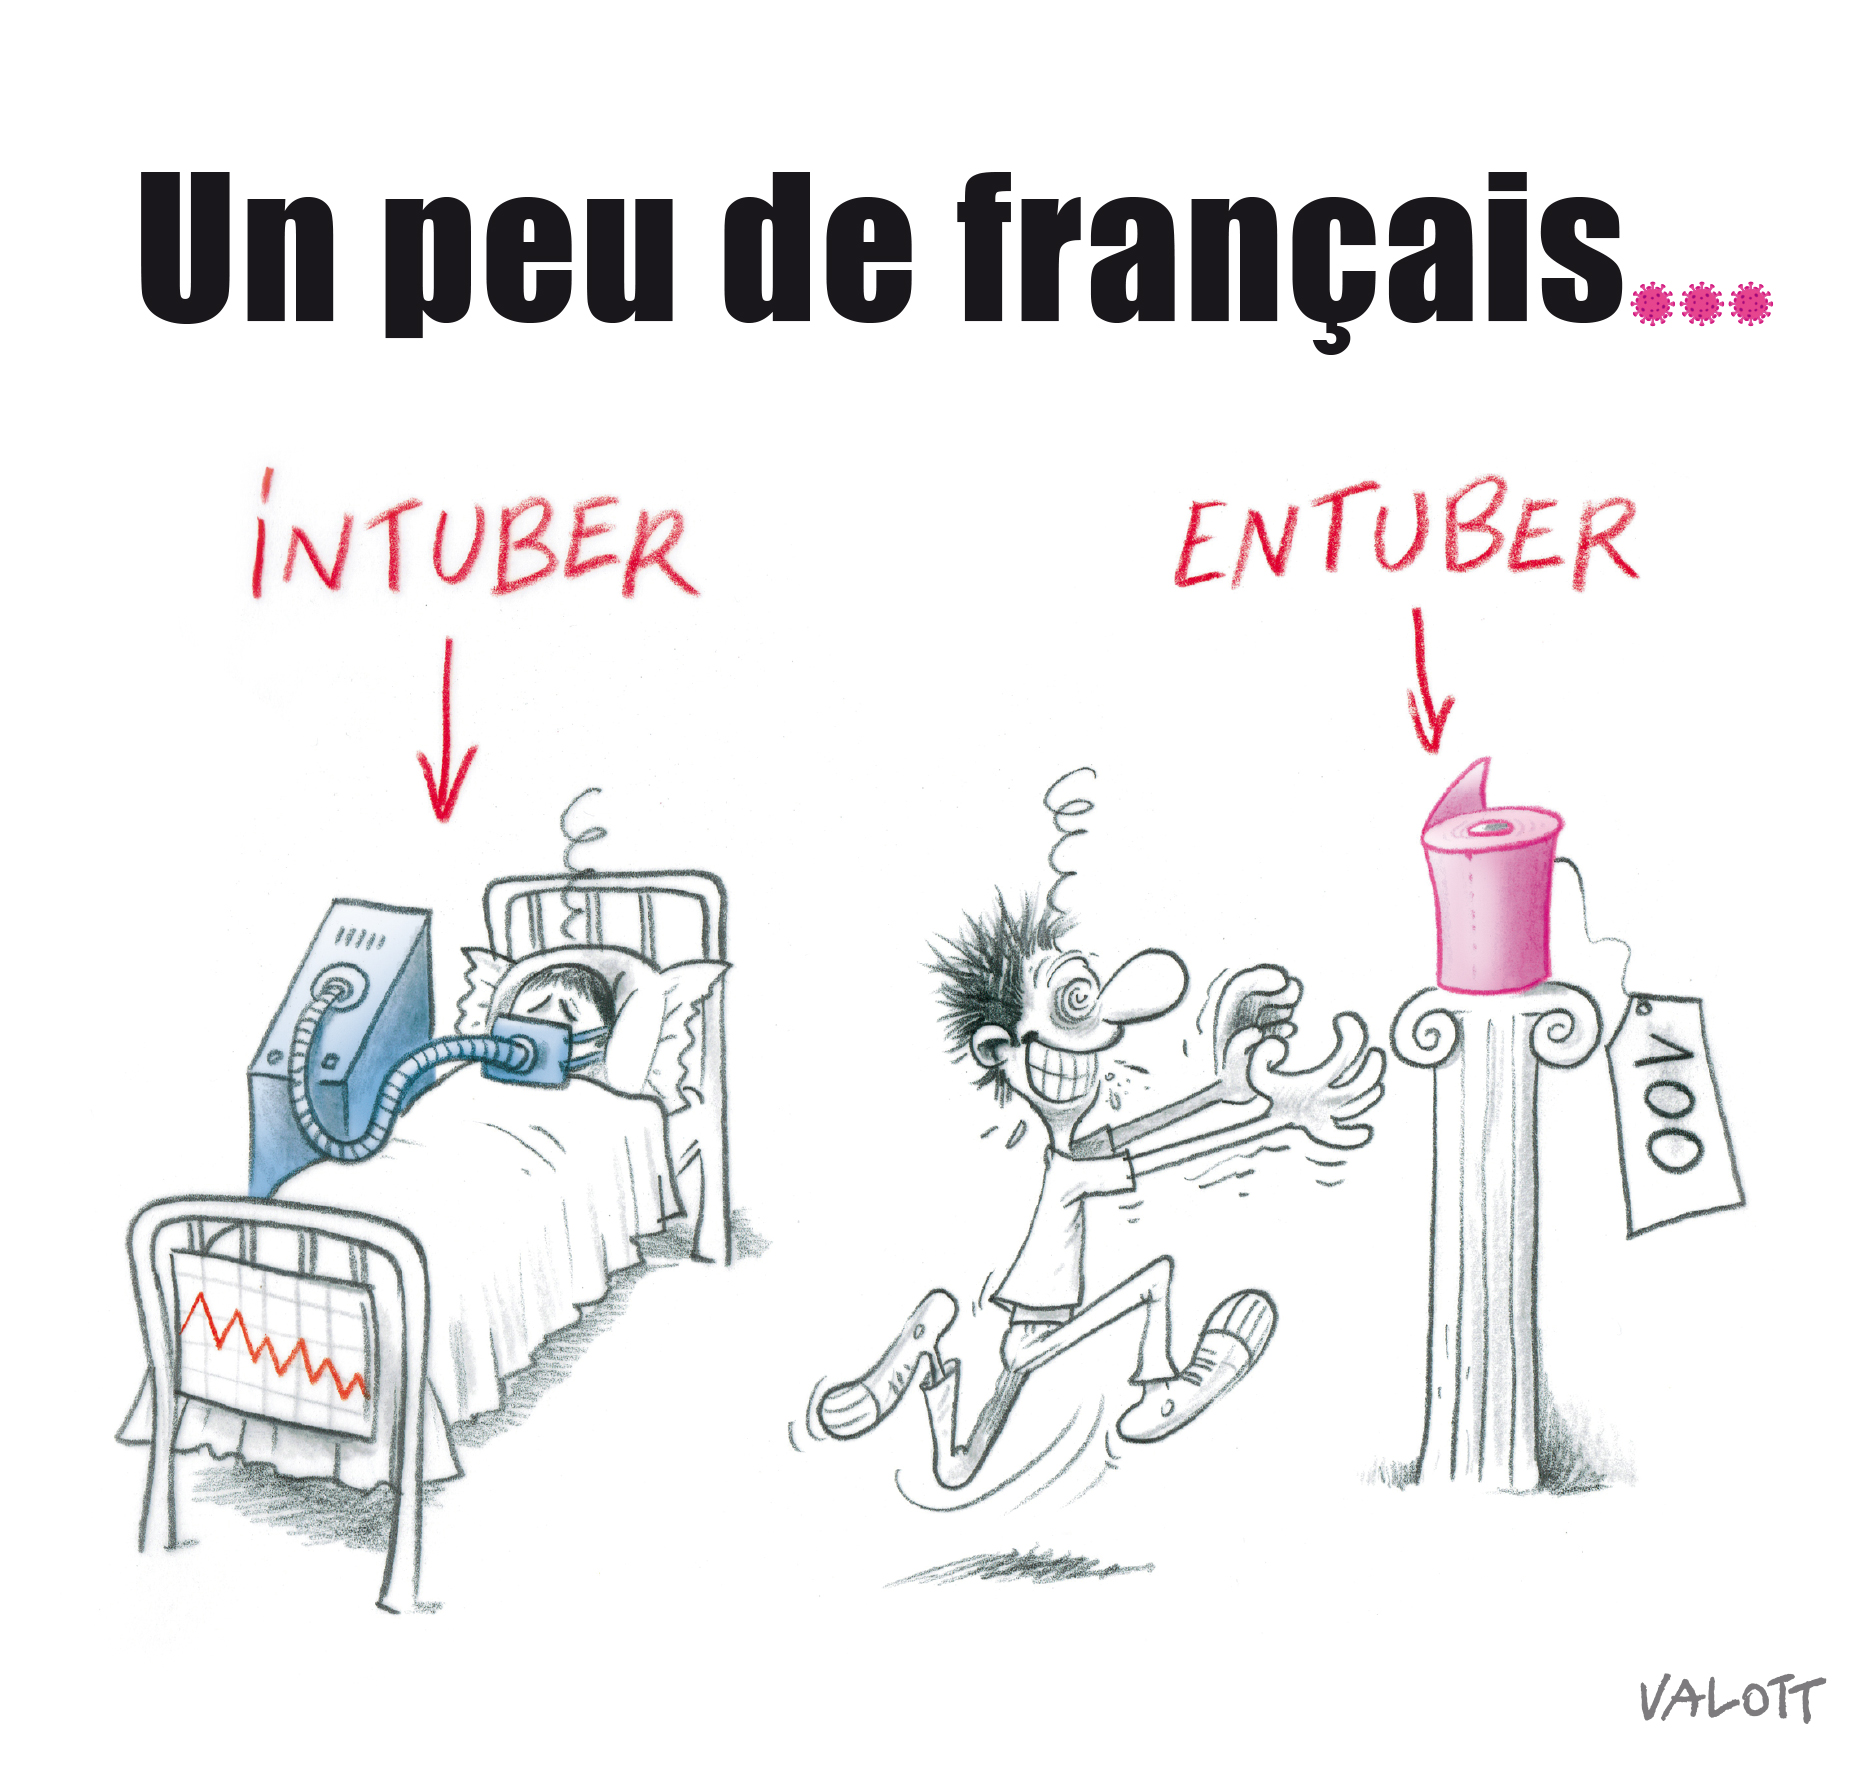 Diferencia entre intubar y entubar (en francés, en el sentido de estafa)